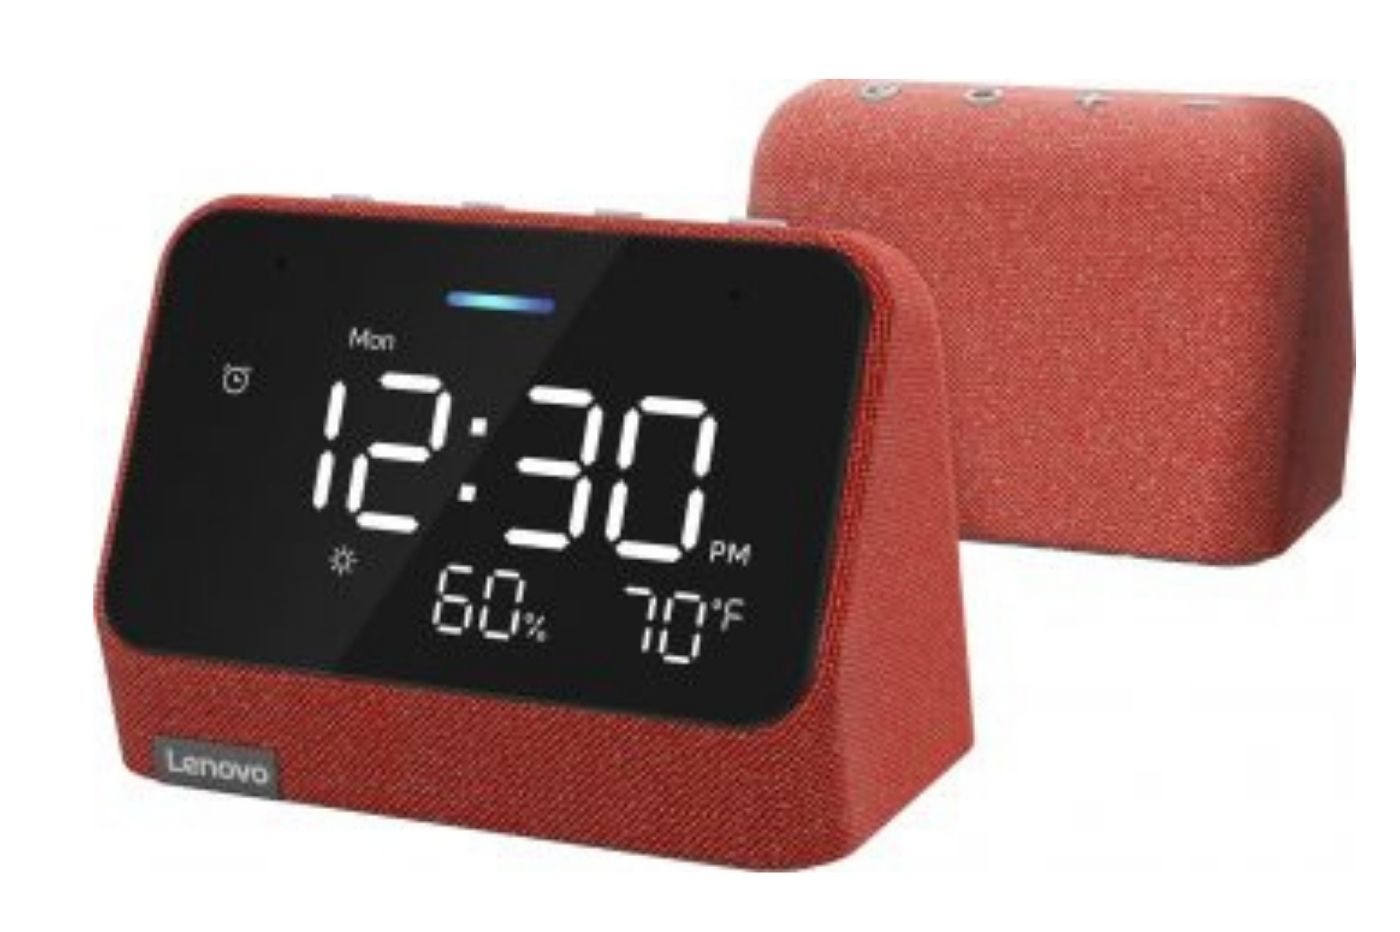 Domotique : Xiaomi lance le Mi Smart Clock, un radio-réveil